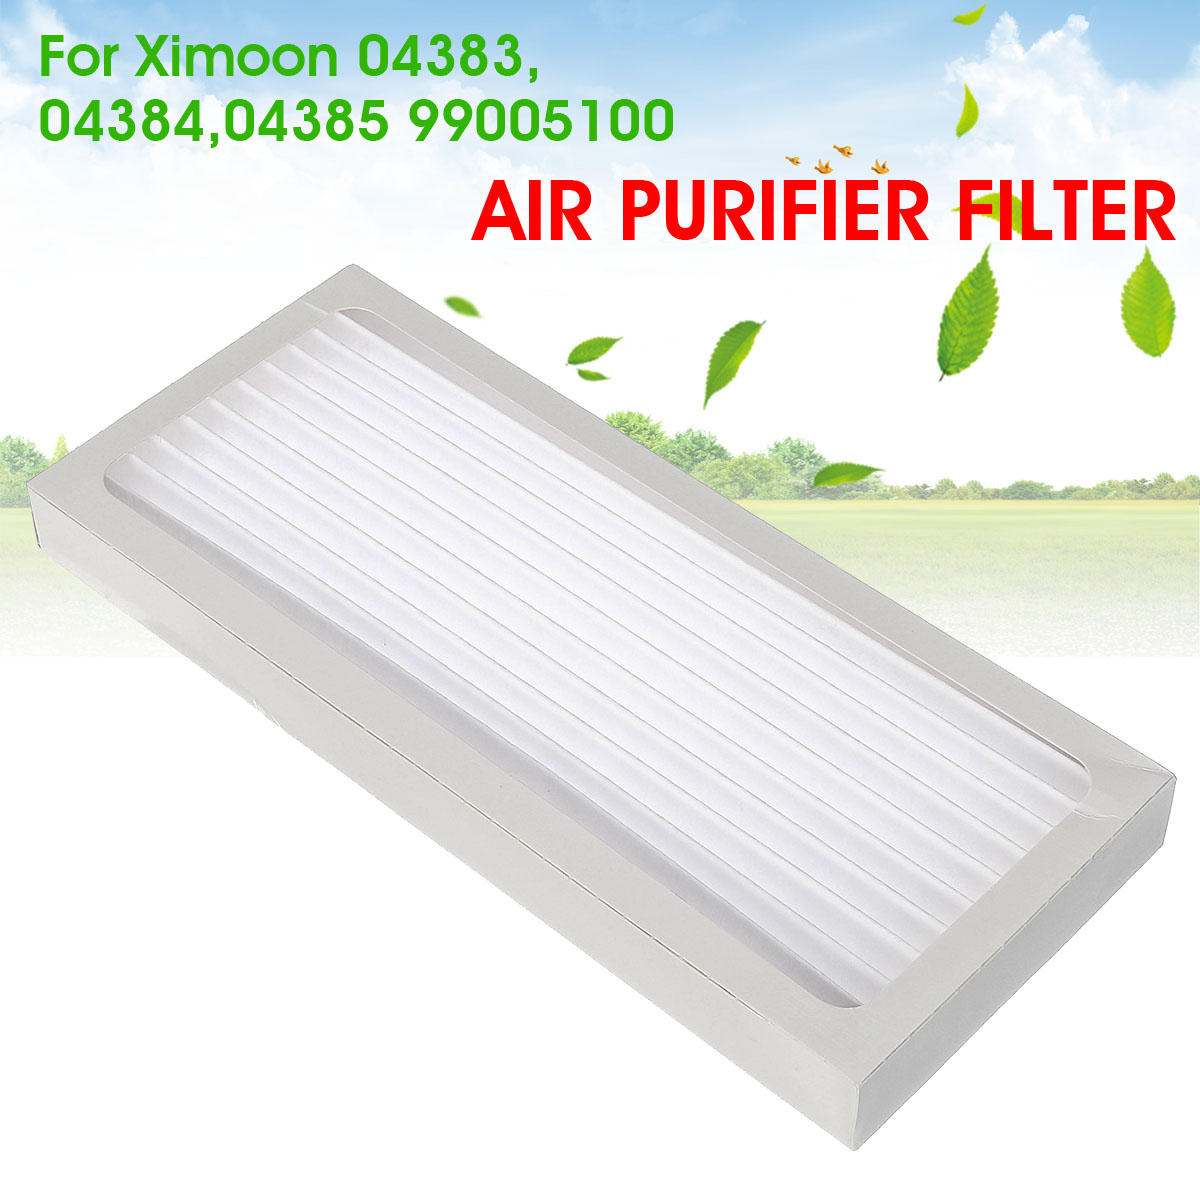 

Air Purifier Filter For Ximoon Hamilton Beach True